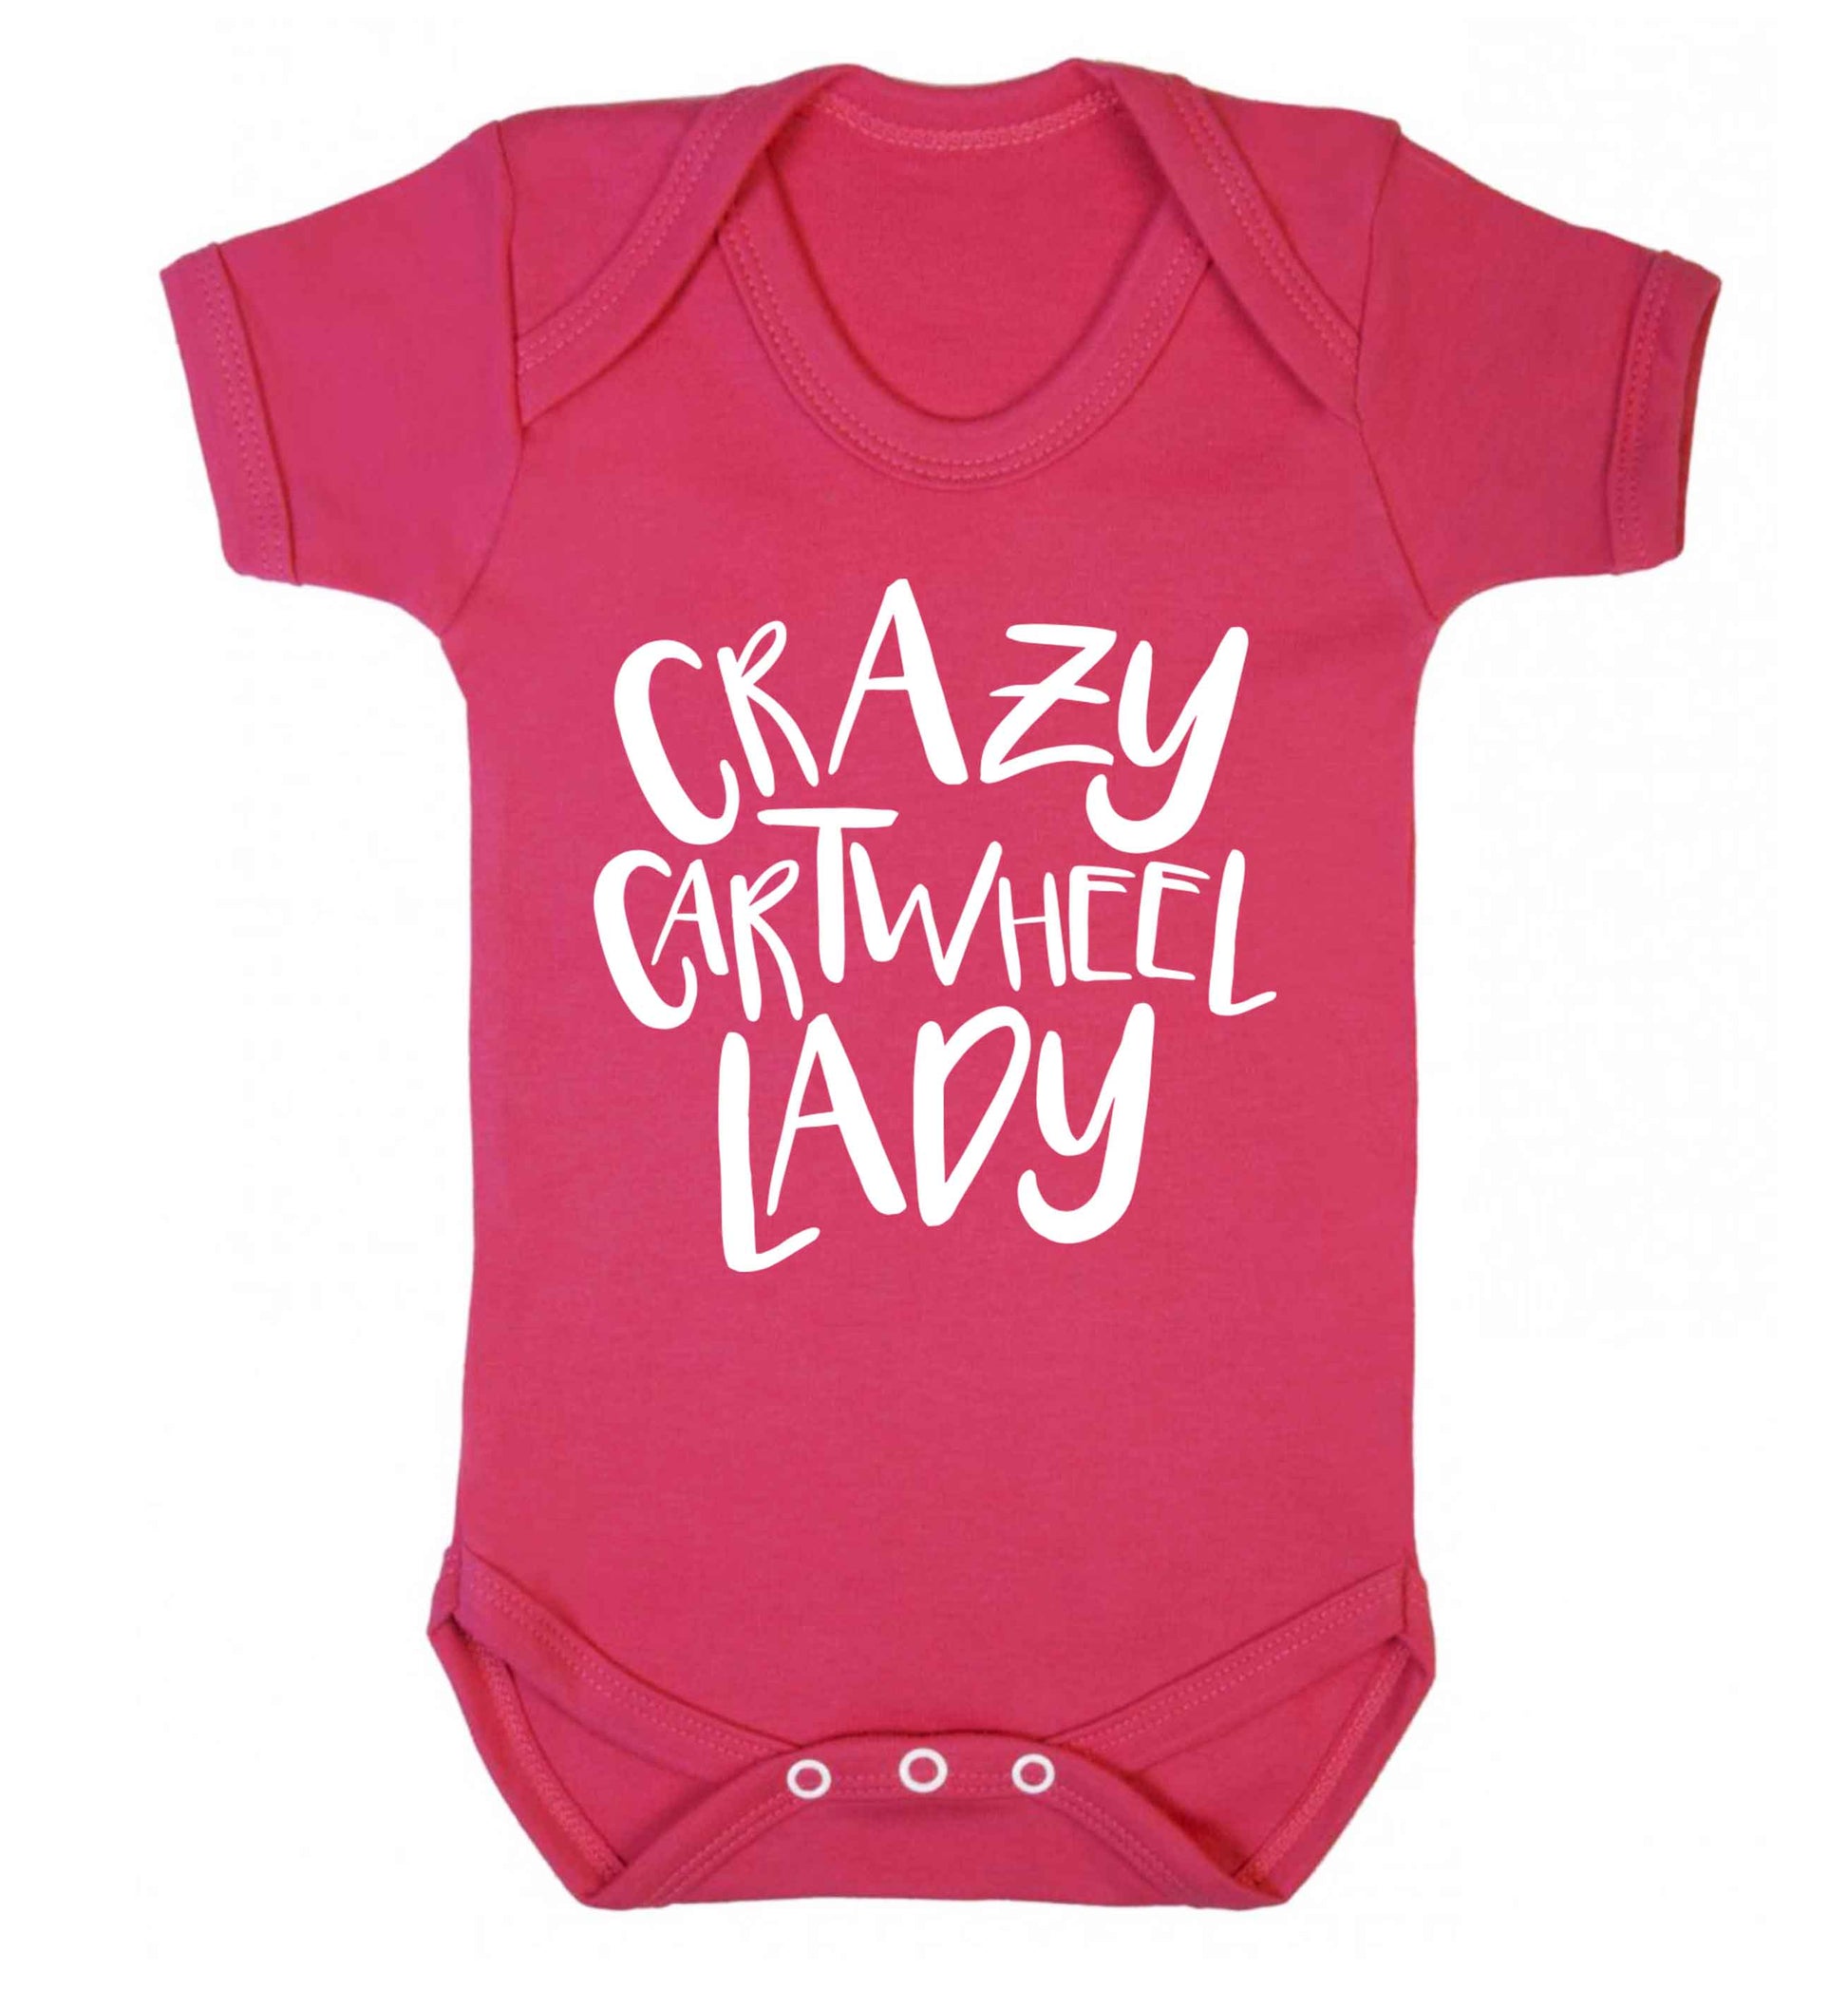 Crazy cartwheel lady Baby Vest dark pink 18-24 months